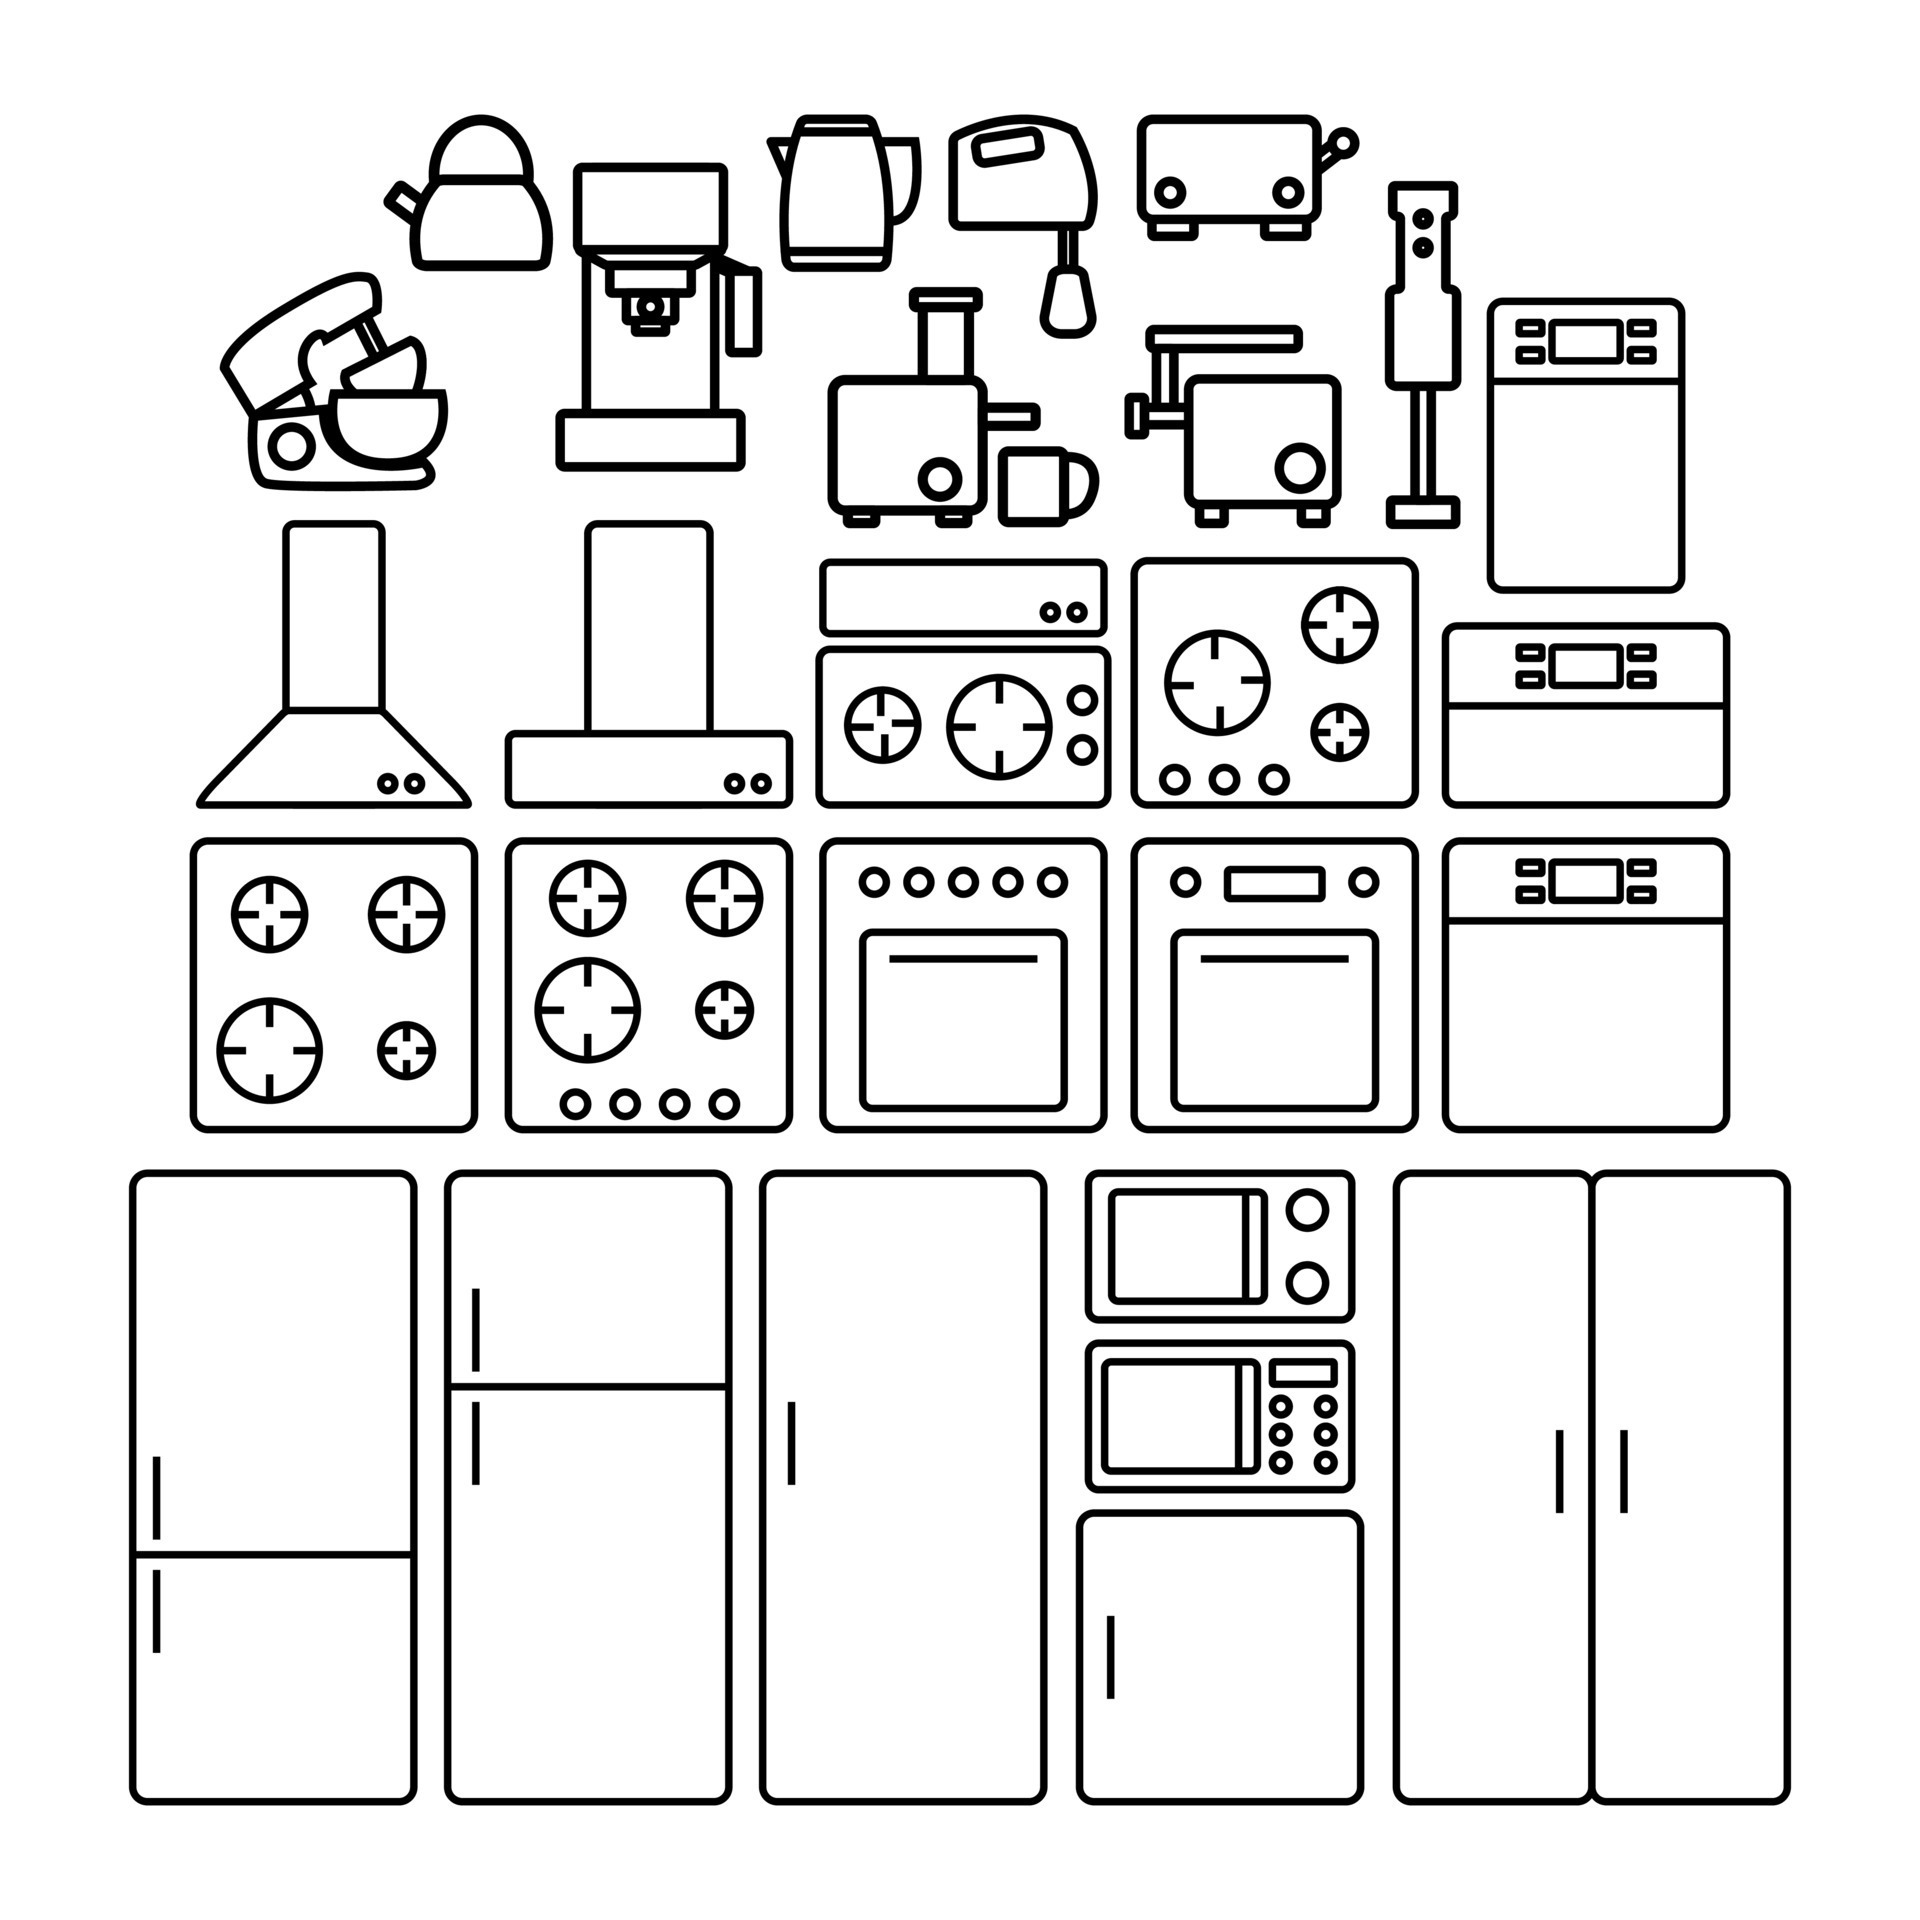 Set of Kitchen Appliances, Vectors